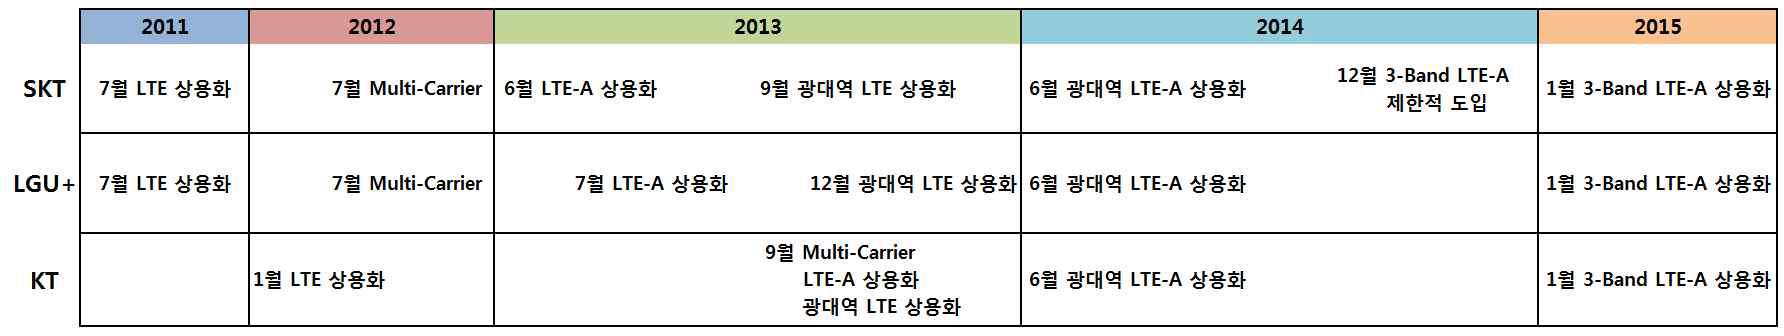 국내 이동통신사별 LTE 및 LTE-A 도입 현황